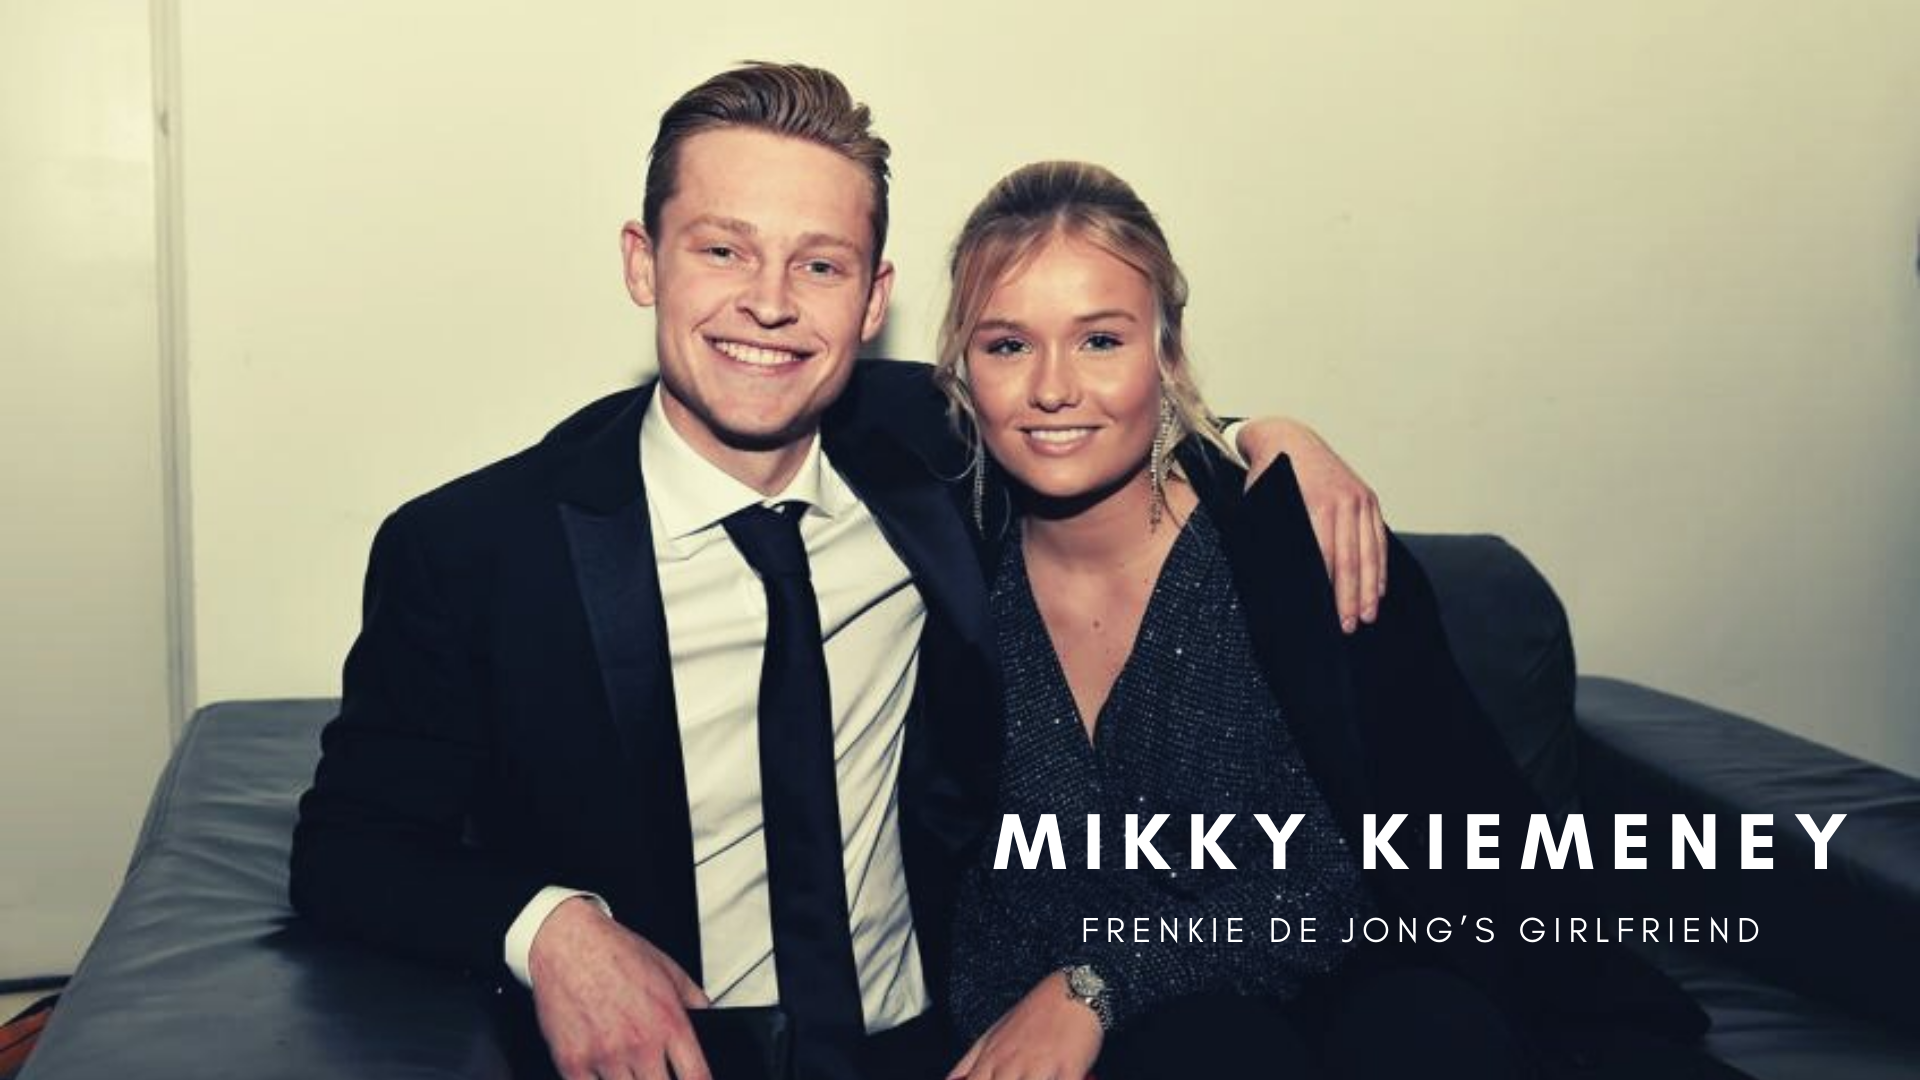 Frenkie de Jong with girlfriend Mikky Kiemeney. (Credit: FC Barcelona Twitter)